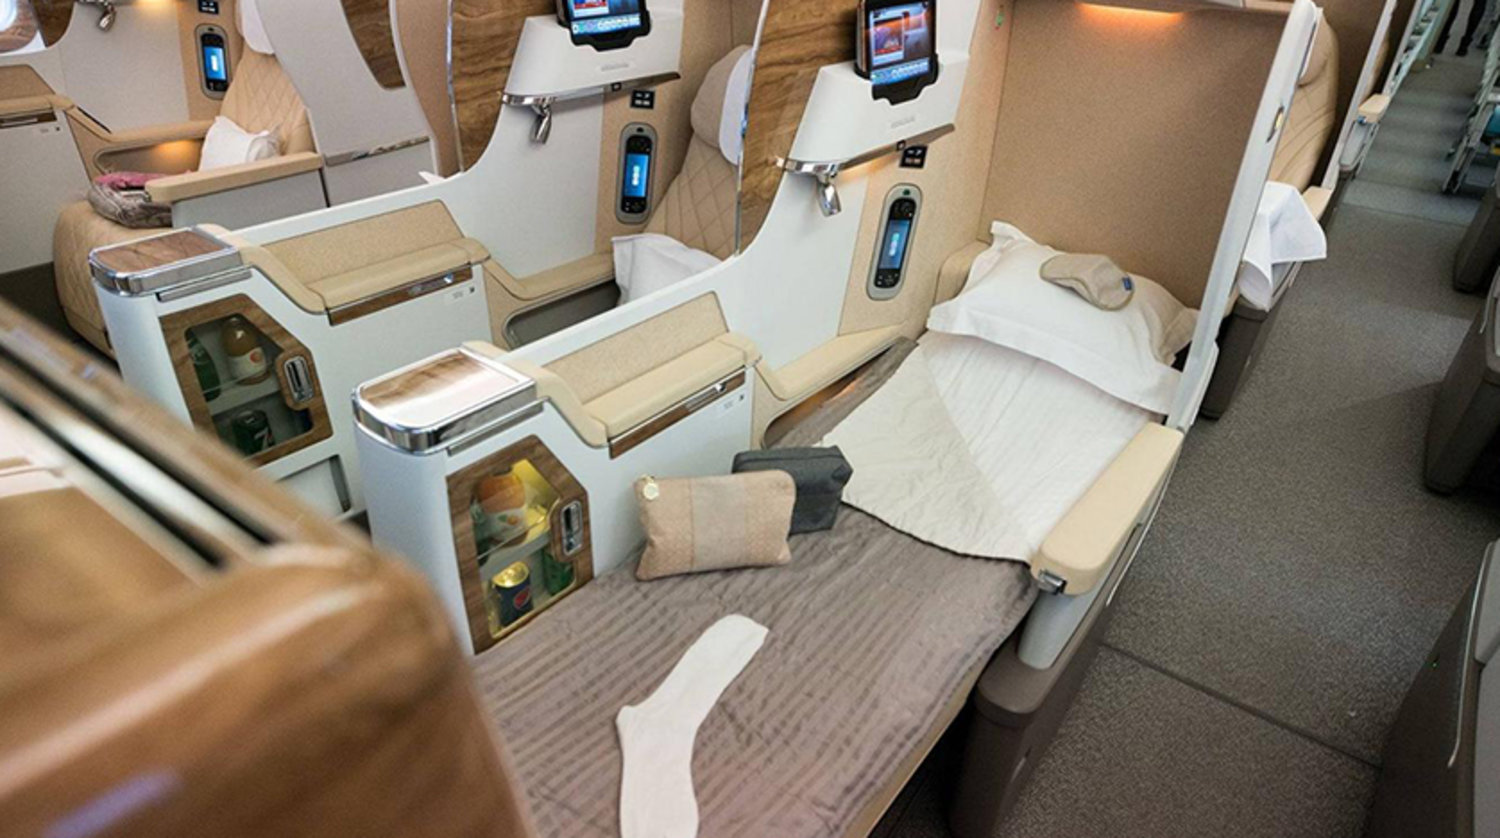 Emirates Boeing 777-300ER'deki business class kabininin bir fotoğrafı (Emirates)